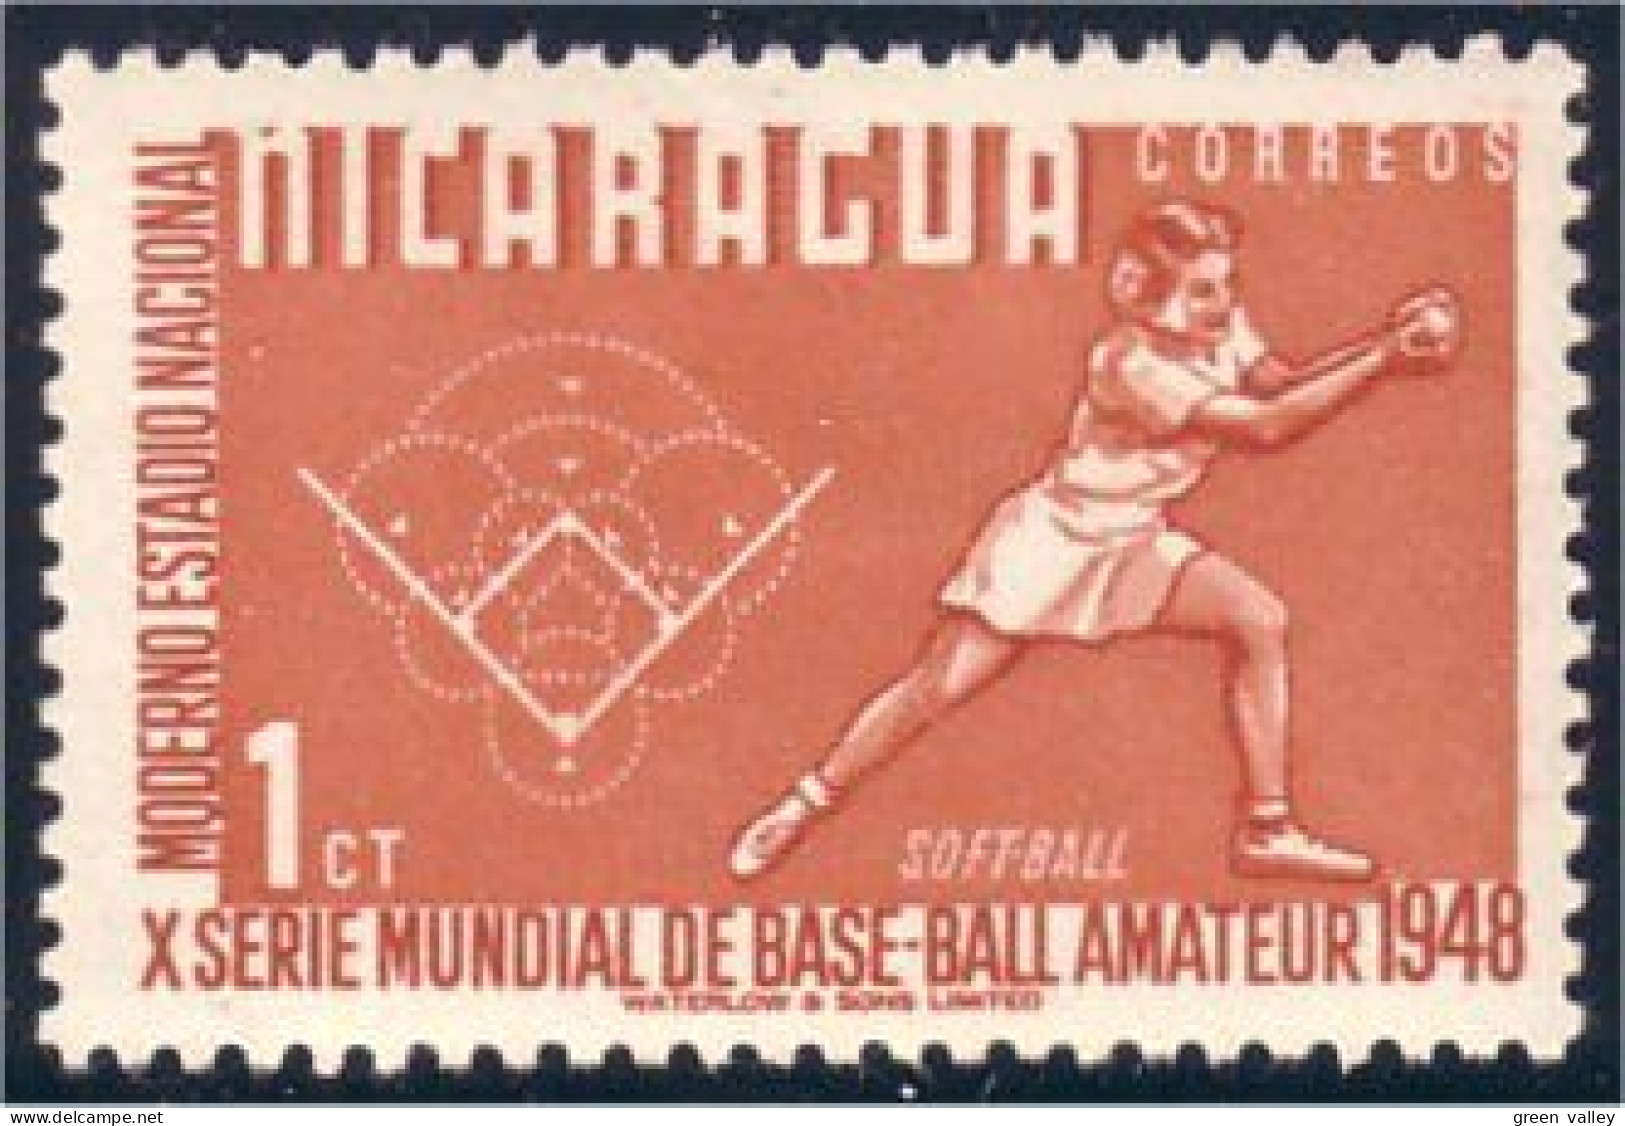 684 Nicaragua Baseball Base Ball MLH * Neuf (NIC-173) - Baseball